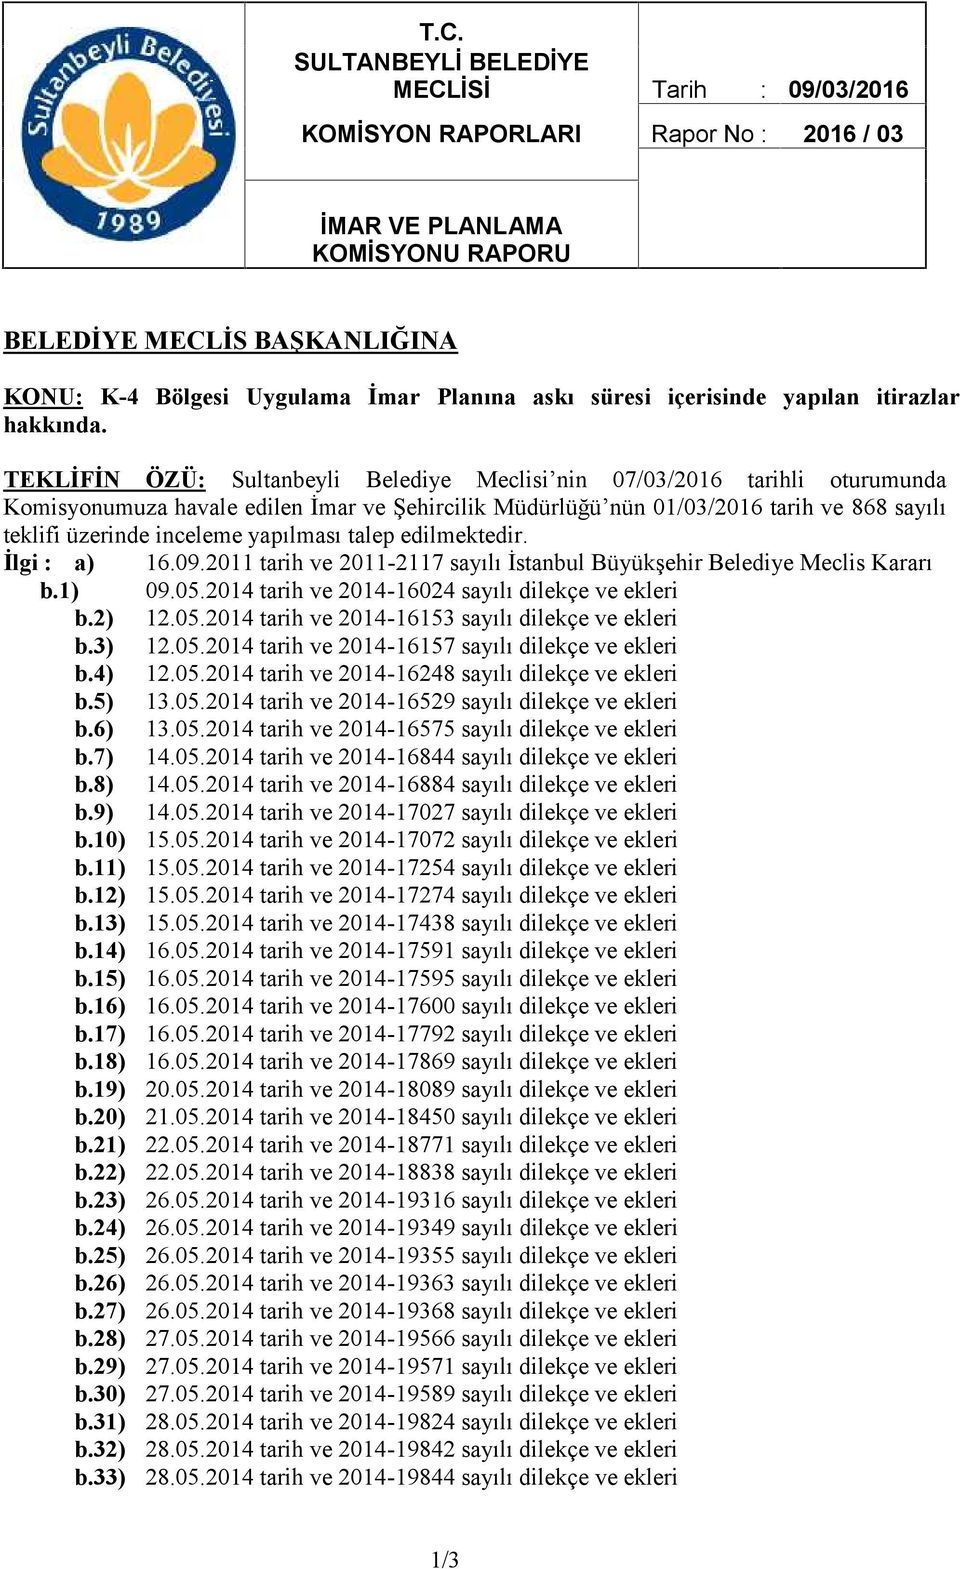 TEKLİFİN ÖZÜ: Sultanbeyli Belediye Meclisi nin 07/03/2016 tarihli oturumunda Komisyonumuza havale edilen İmar ve Şehircilik Müdürlüğü nün 01/03/2016 tarih ve 868 sayılı teklifi üzerinde inceleme